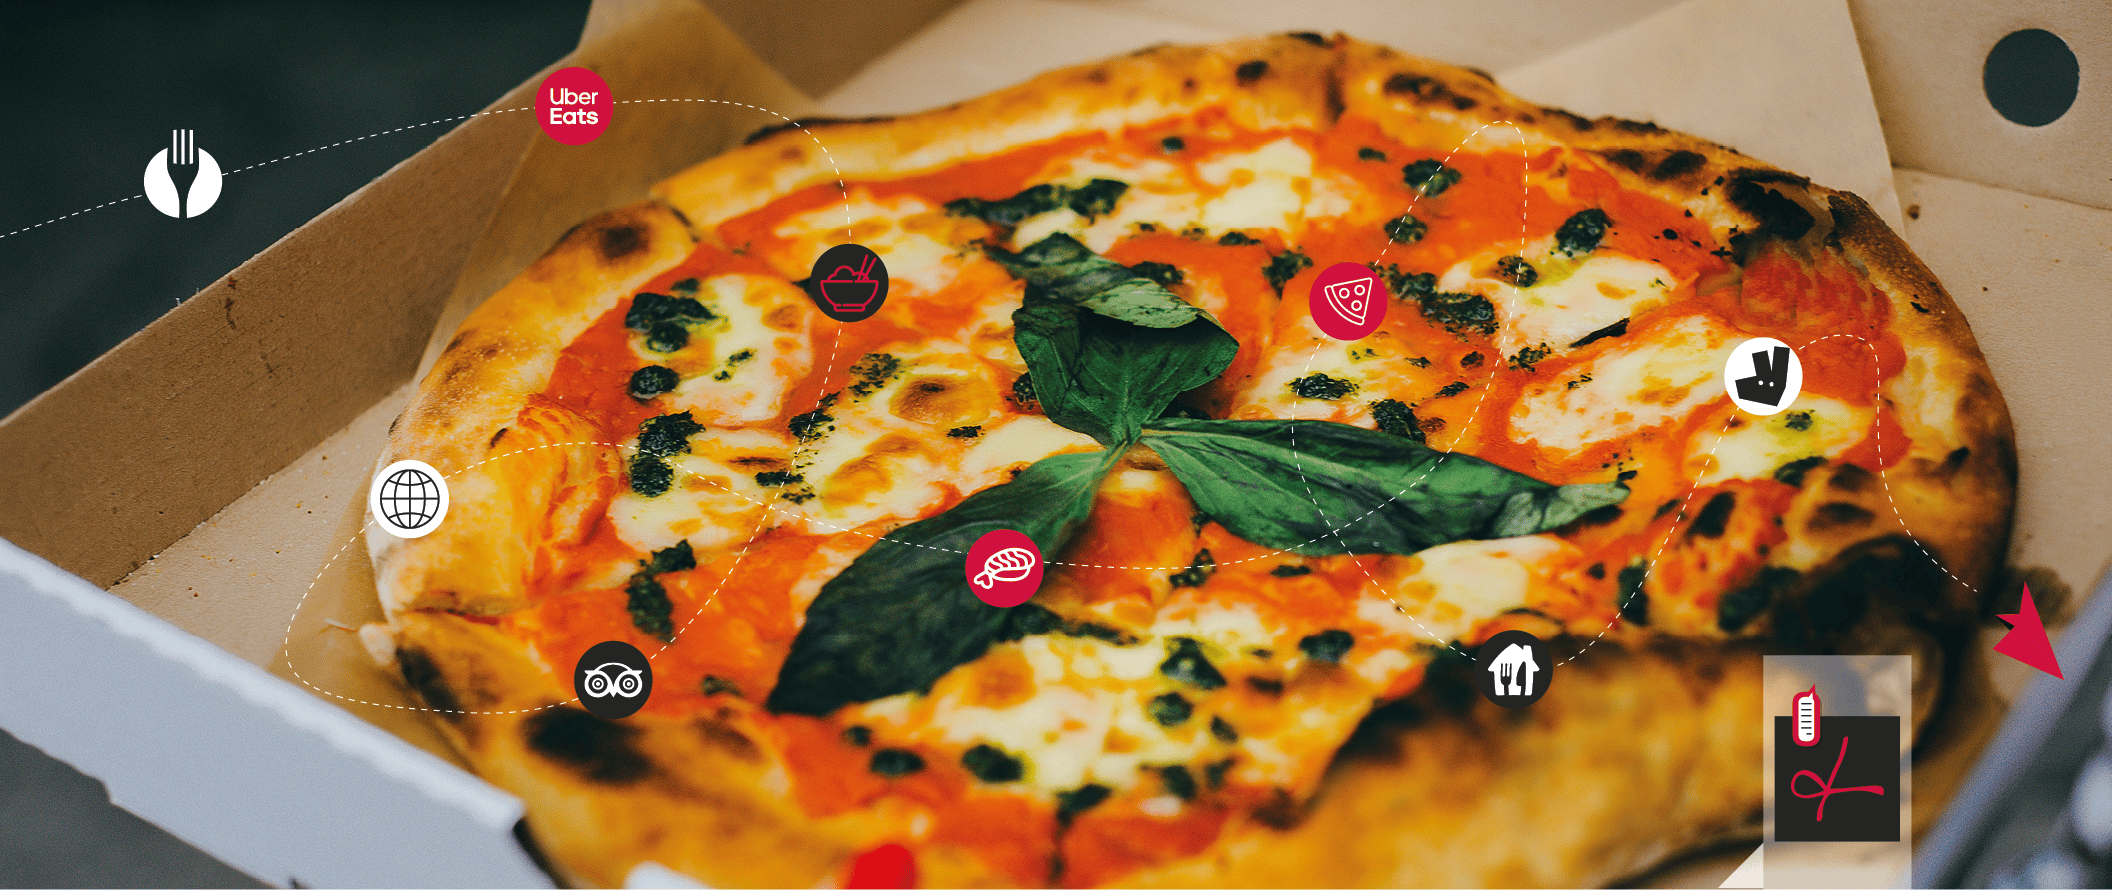 Pizza: cosa cercano gli italiani sul web?